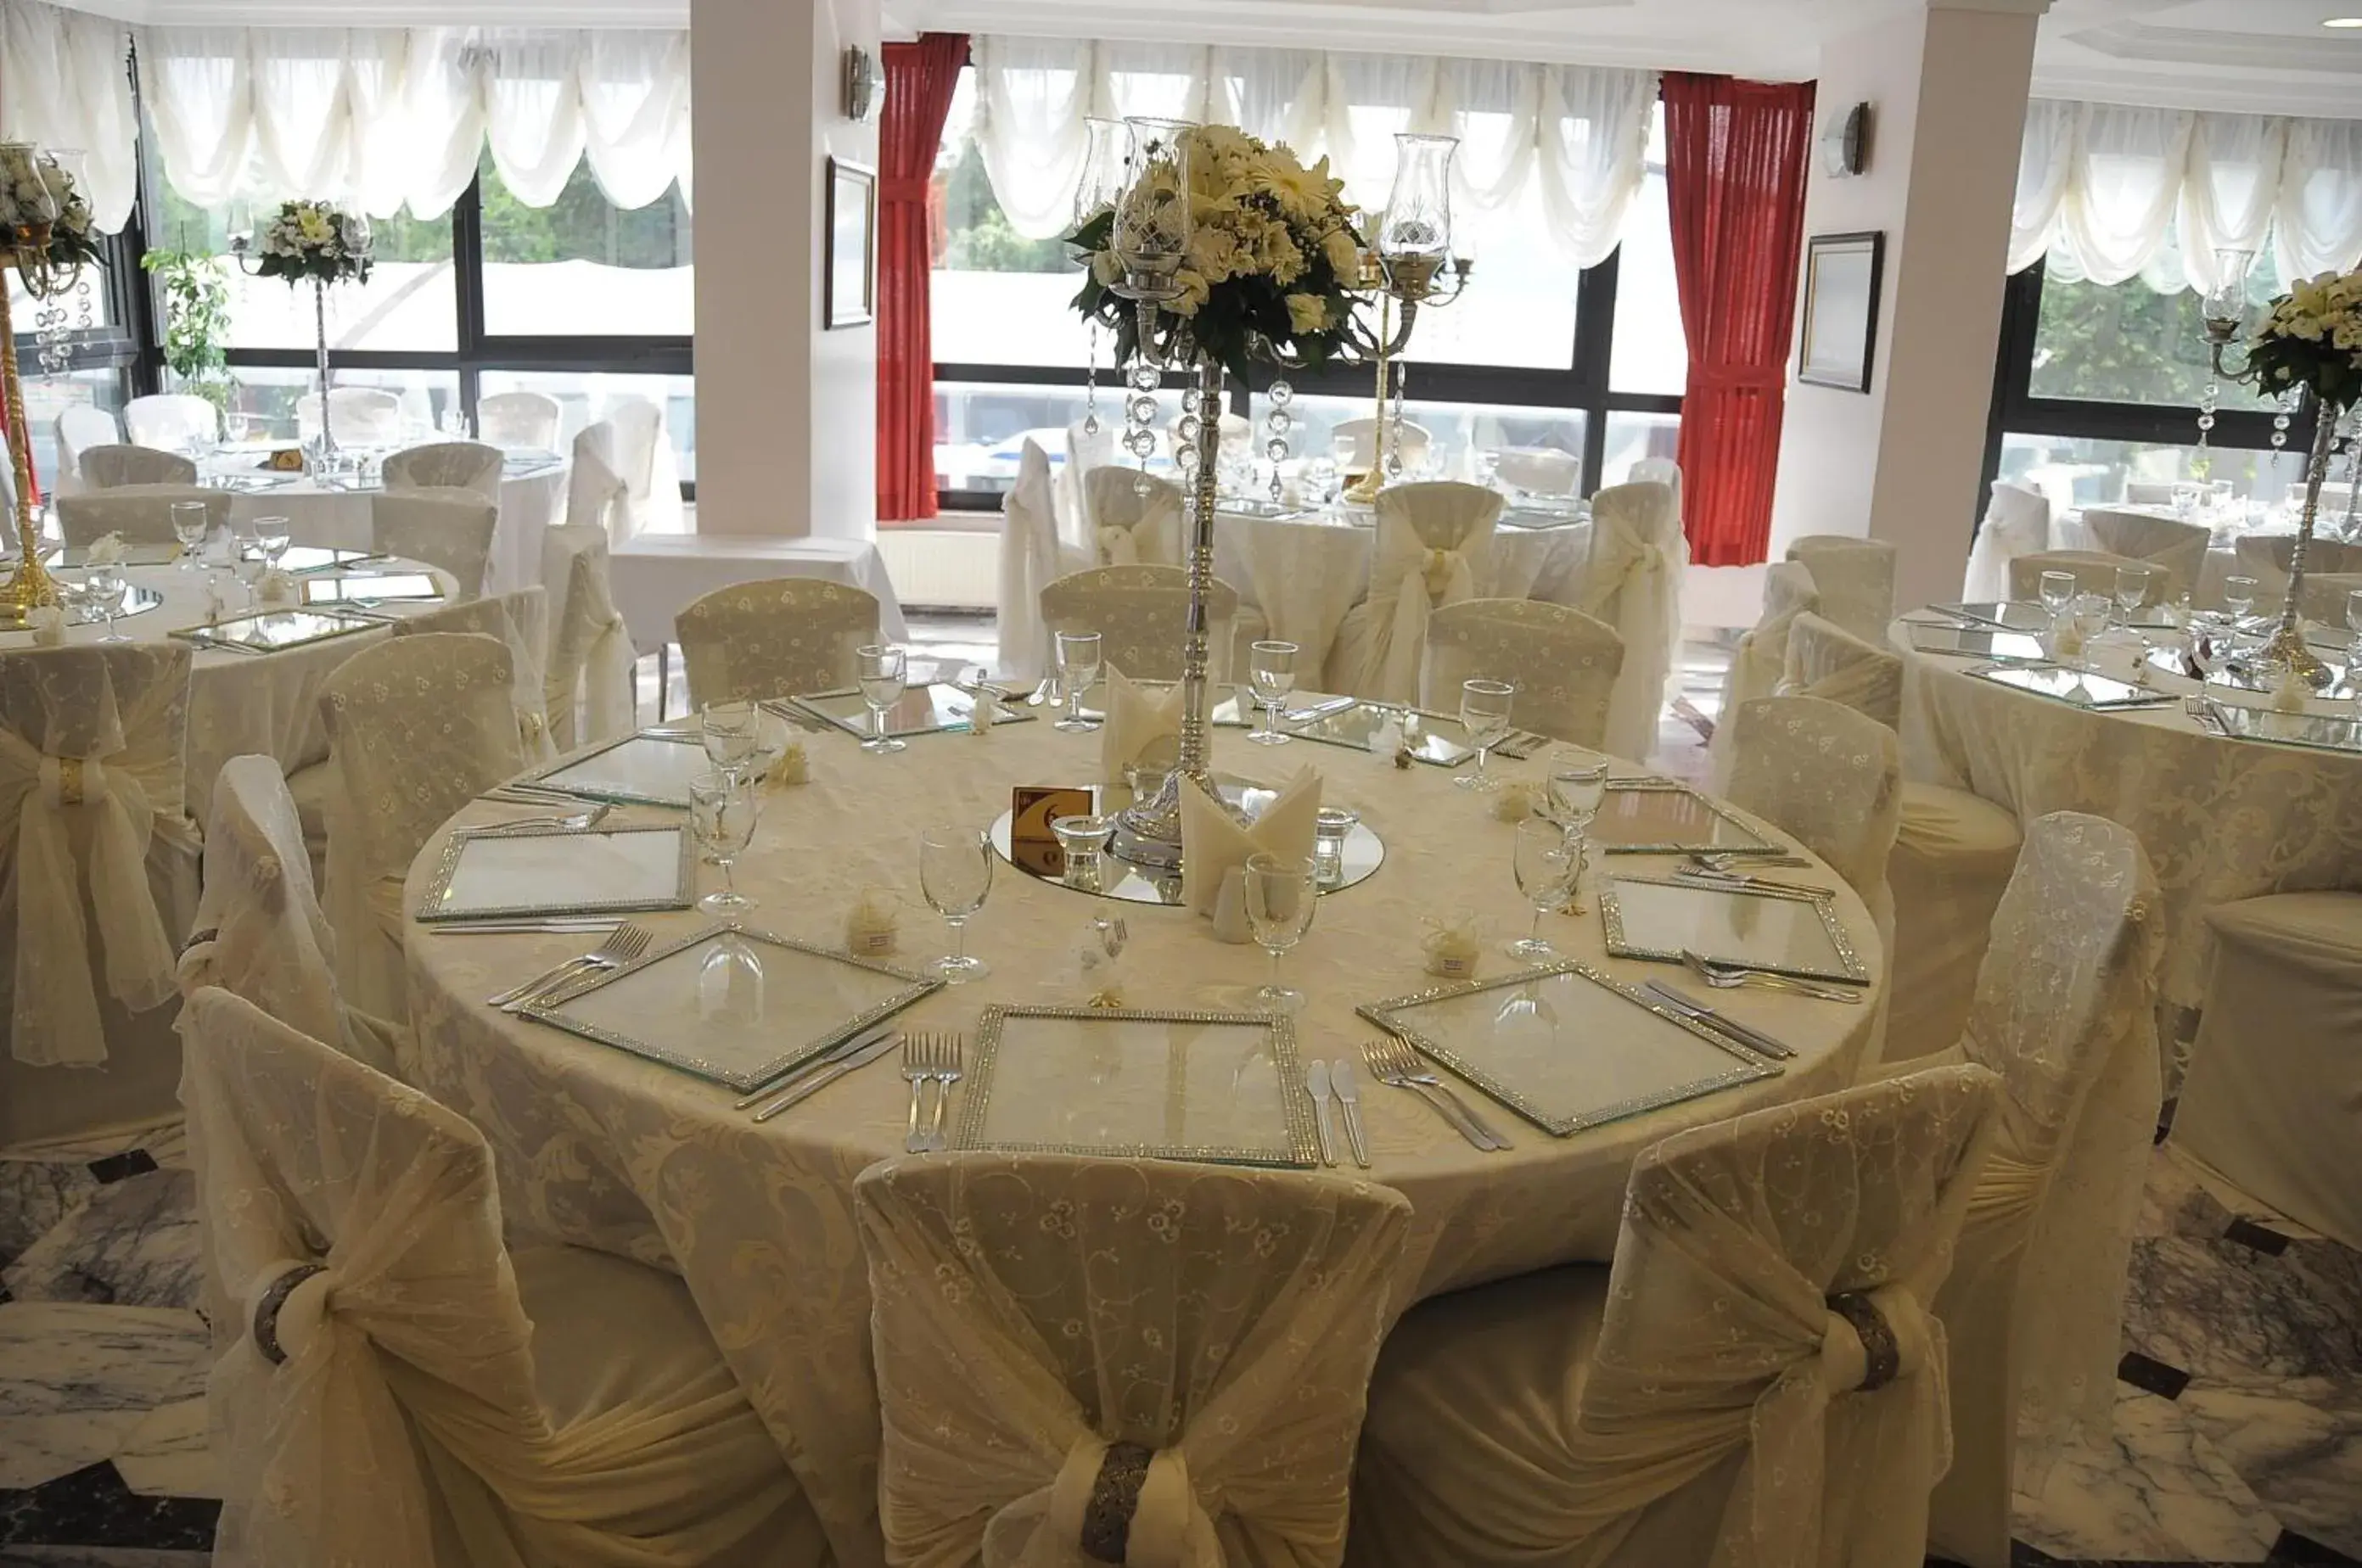 Banquet/Function facilities, Banquet Facilities in Bugday Hotel